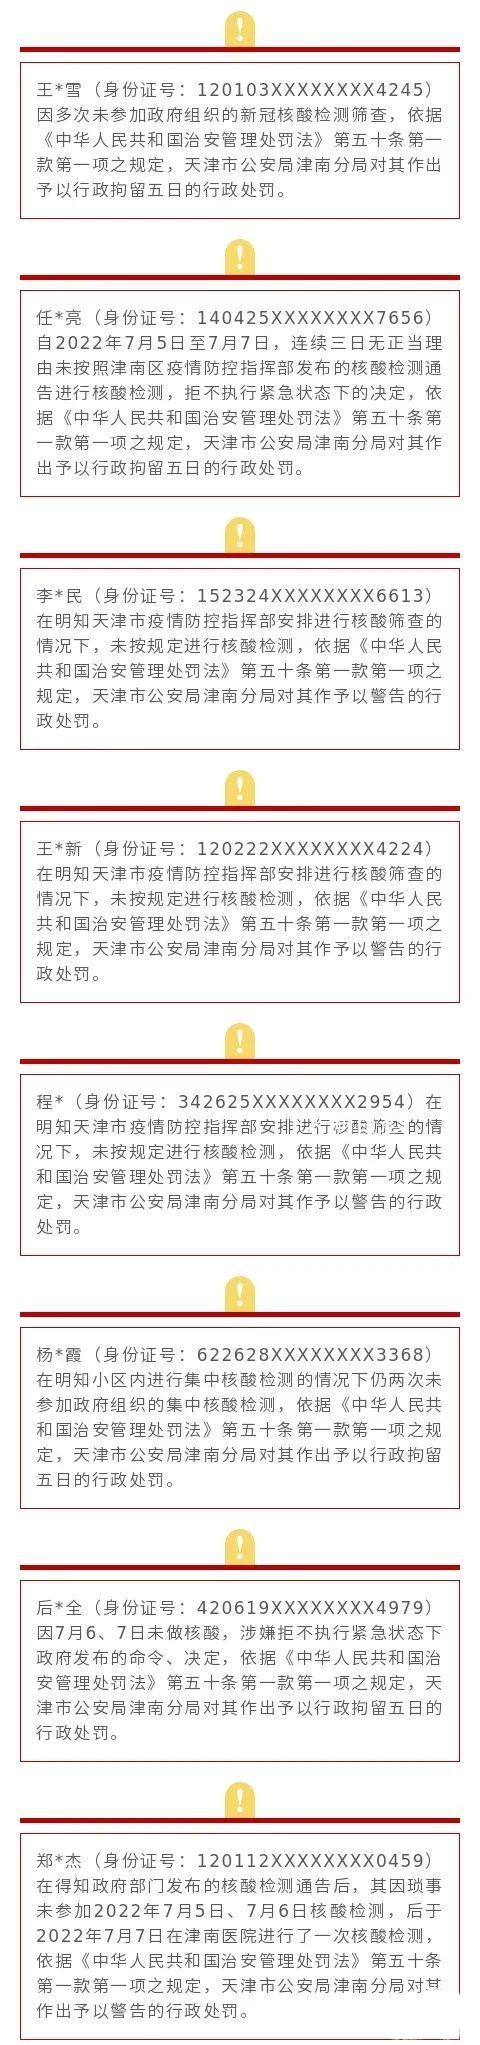 天津多人逃避核检被列“失信名单” 天津市失信人员黑名单